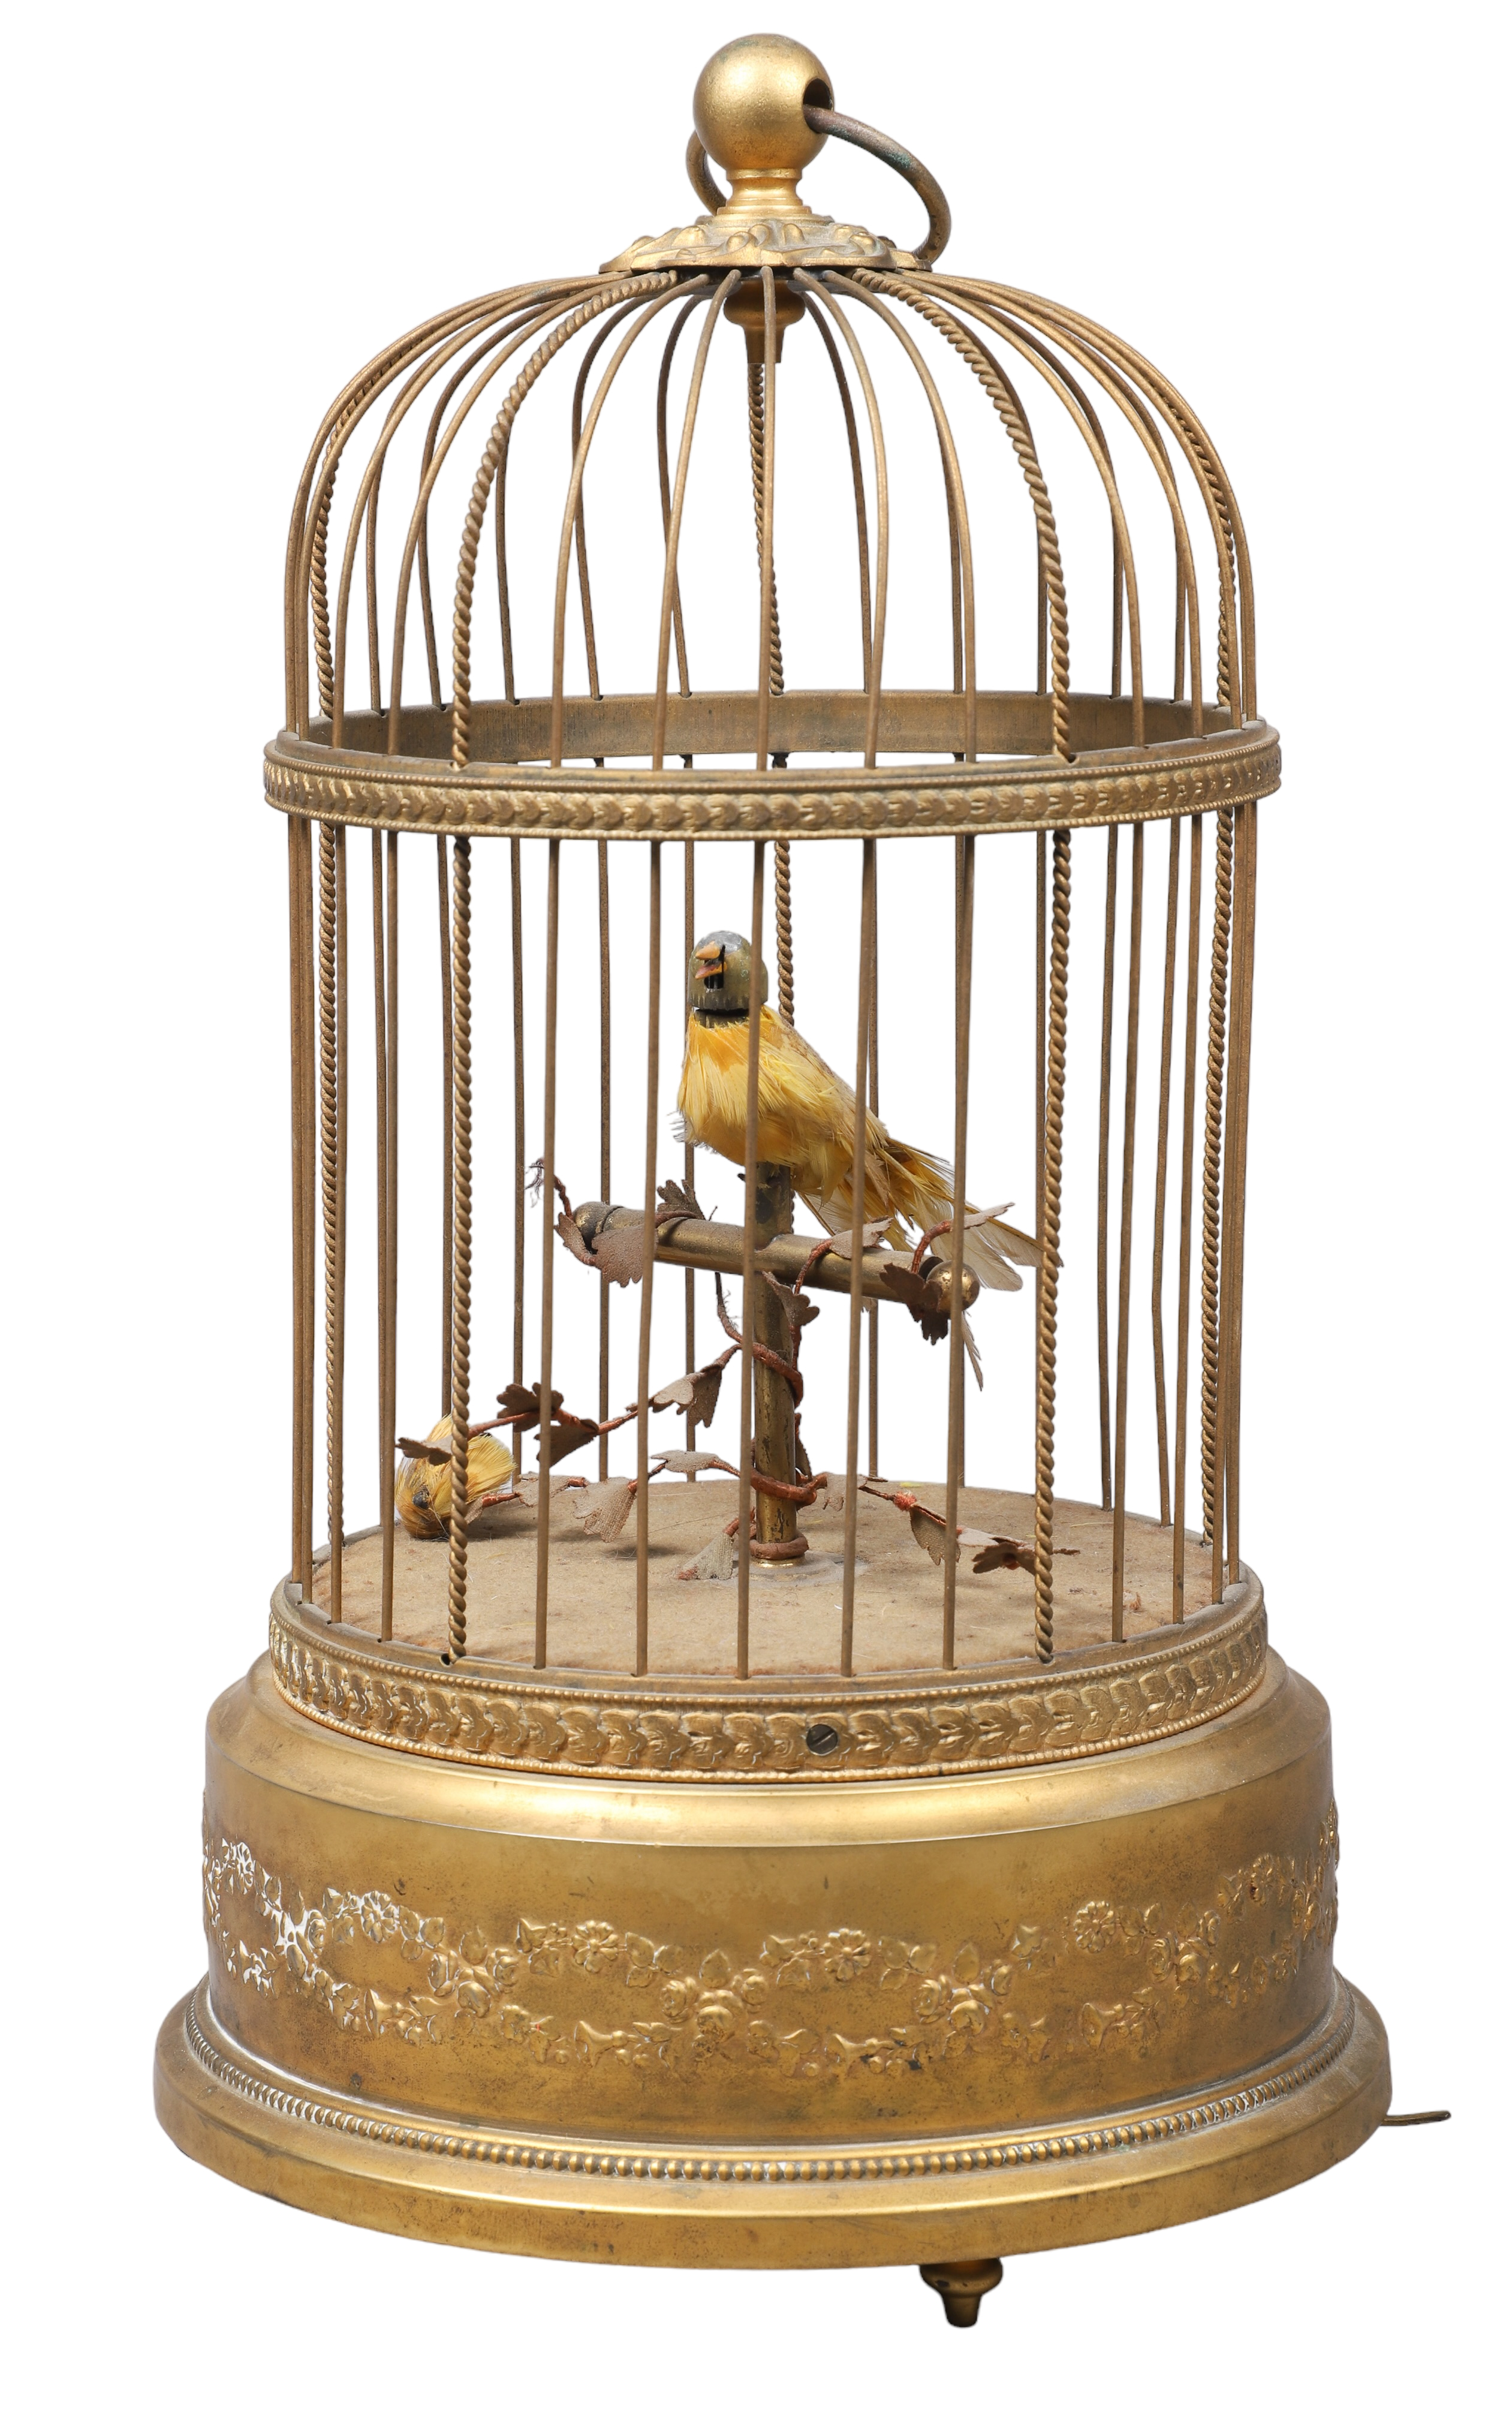 Automaton bird in gilded cage  2e164f